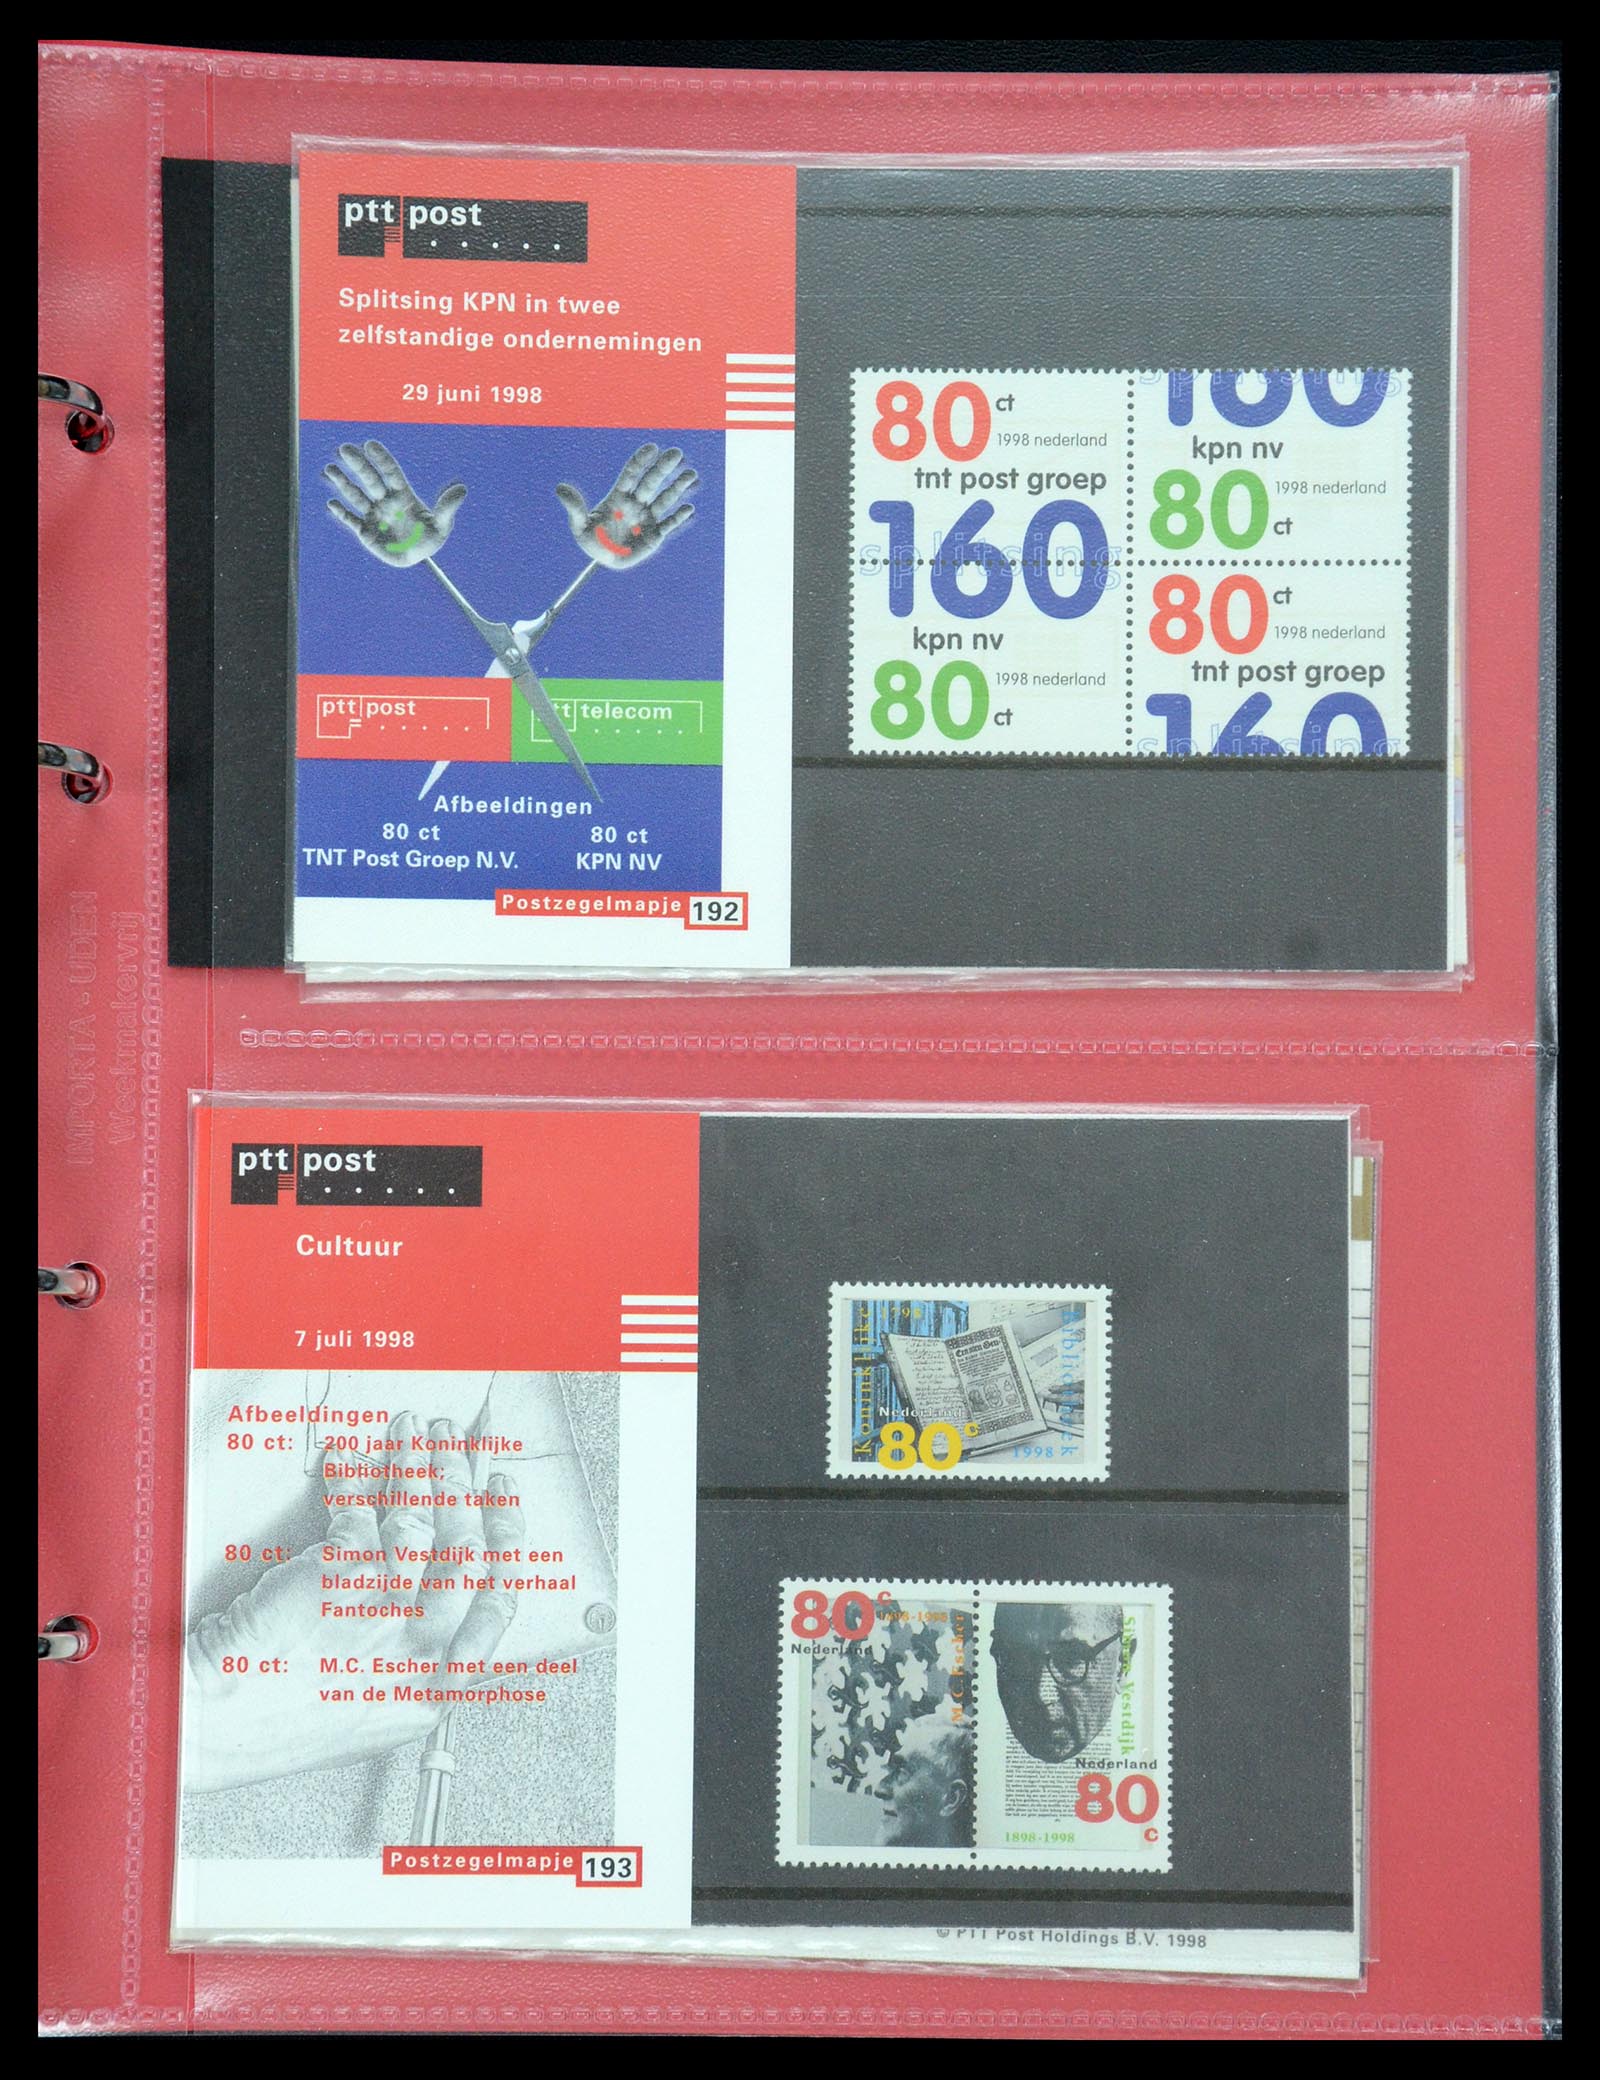 35692 099 - Stamp Collection 35692 Netherlands presentation packs 1982-2021!!